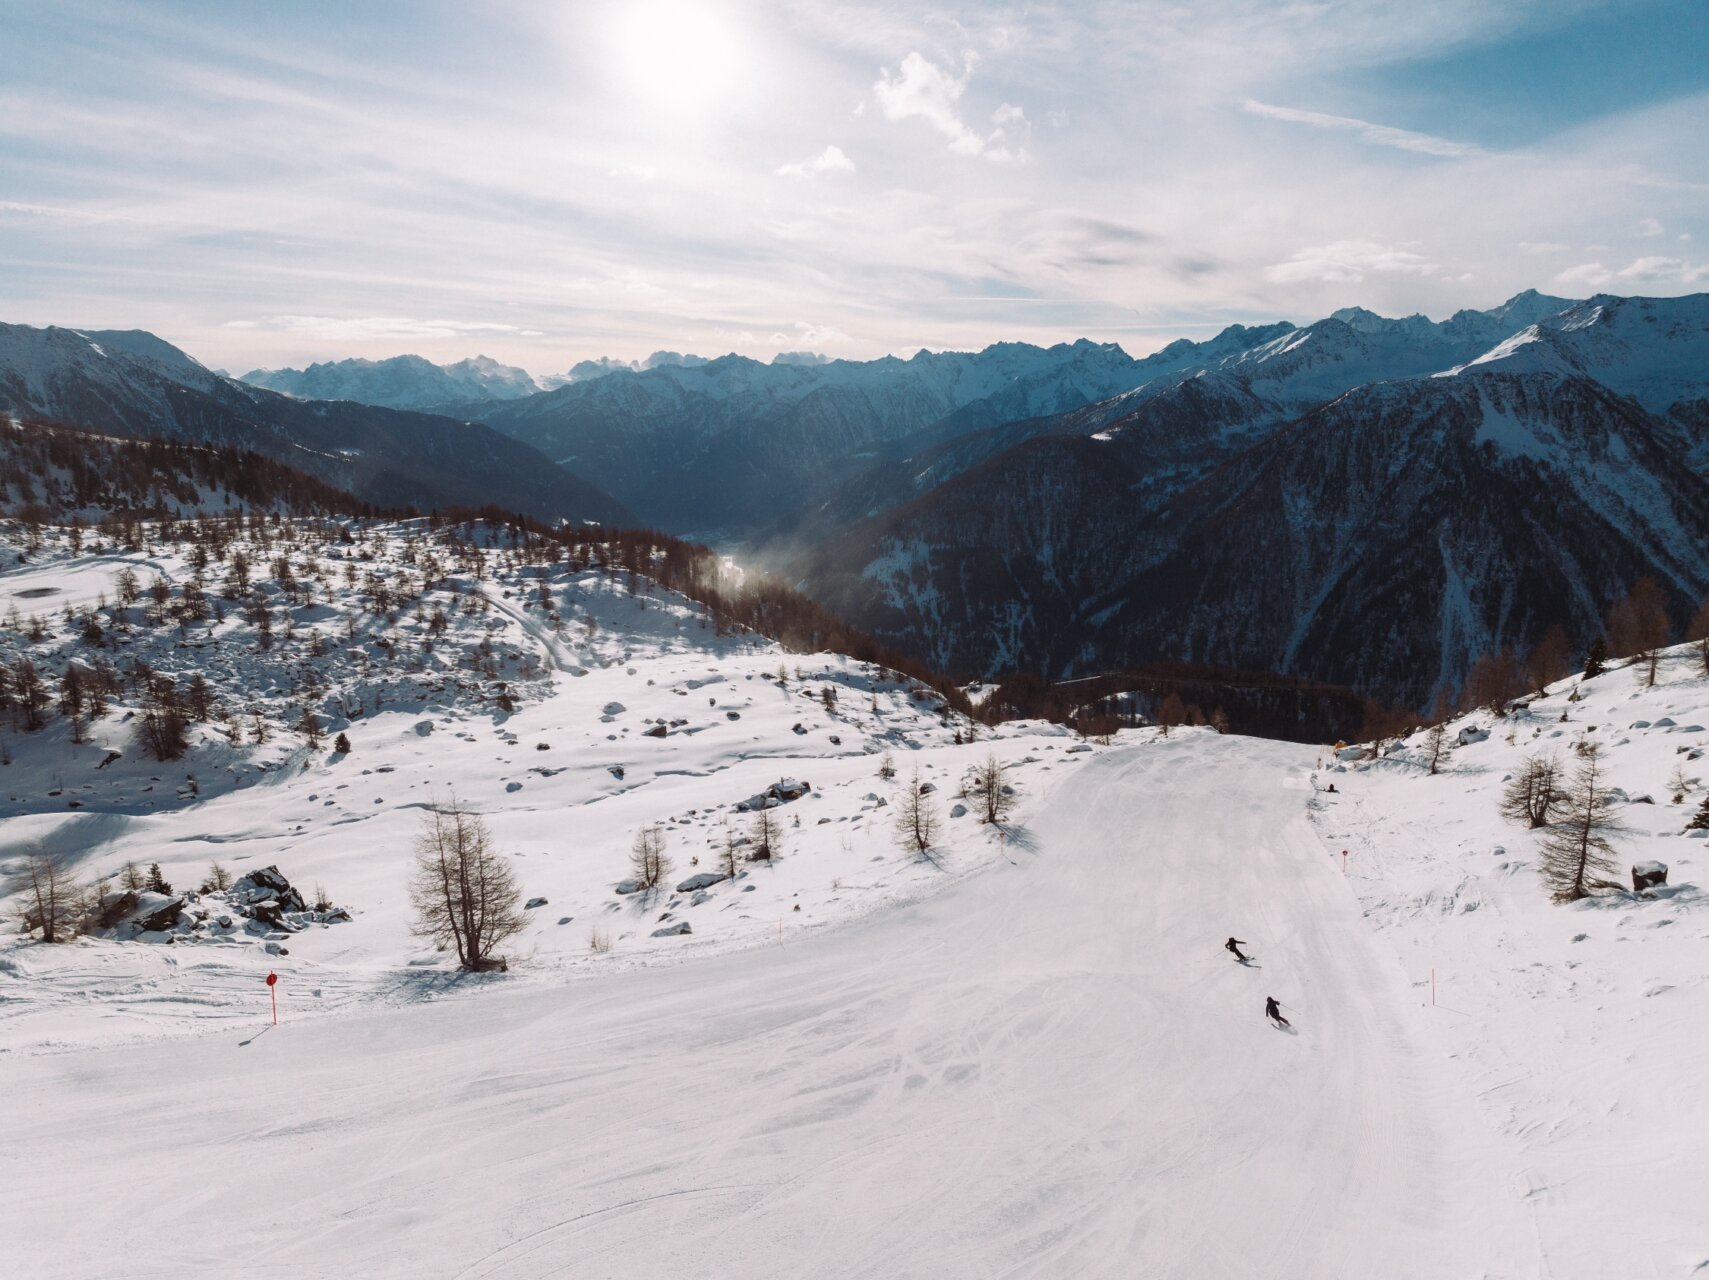 Skiarea Pejo3000 - HD - inverno 22-23 - Ph Alice Russolo (43)